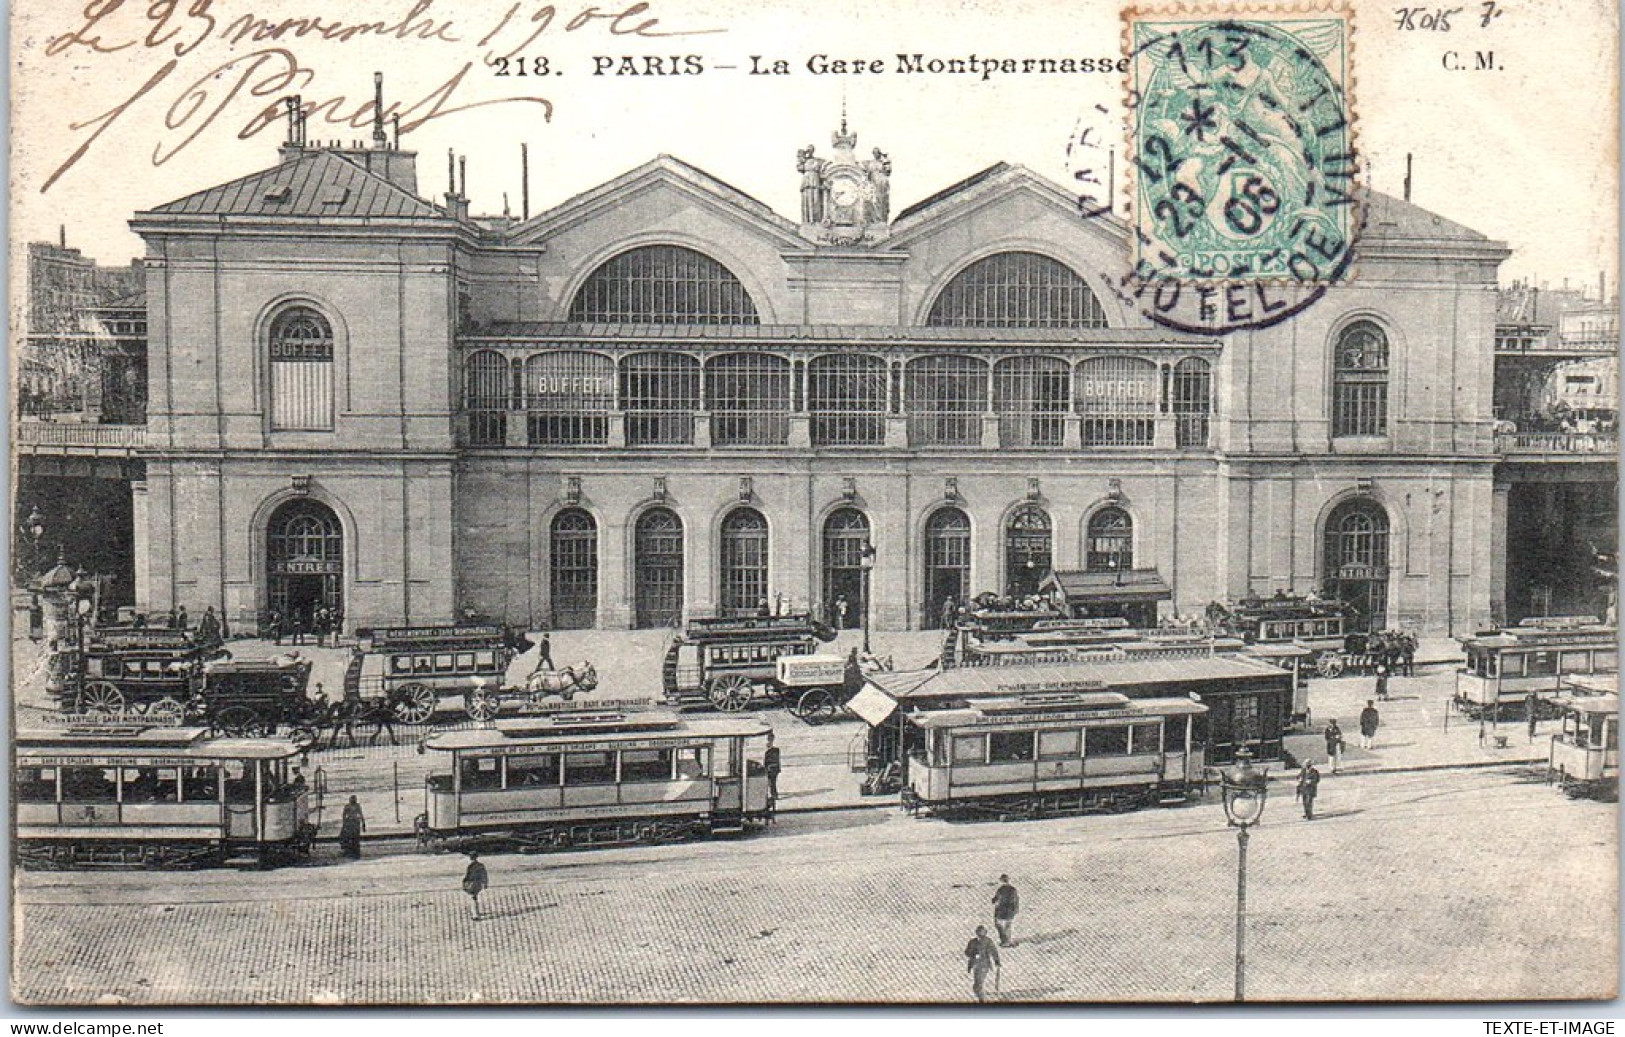 75015 PARIS - Vue D'ensemble Facade Gare Montparnasse  - District 15